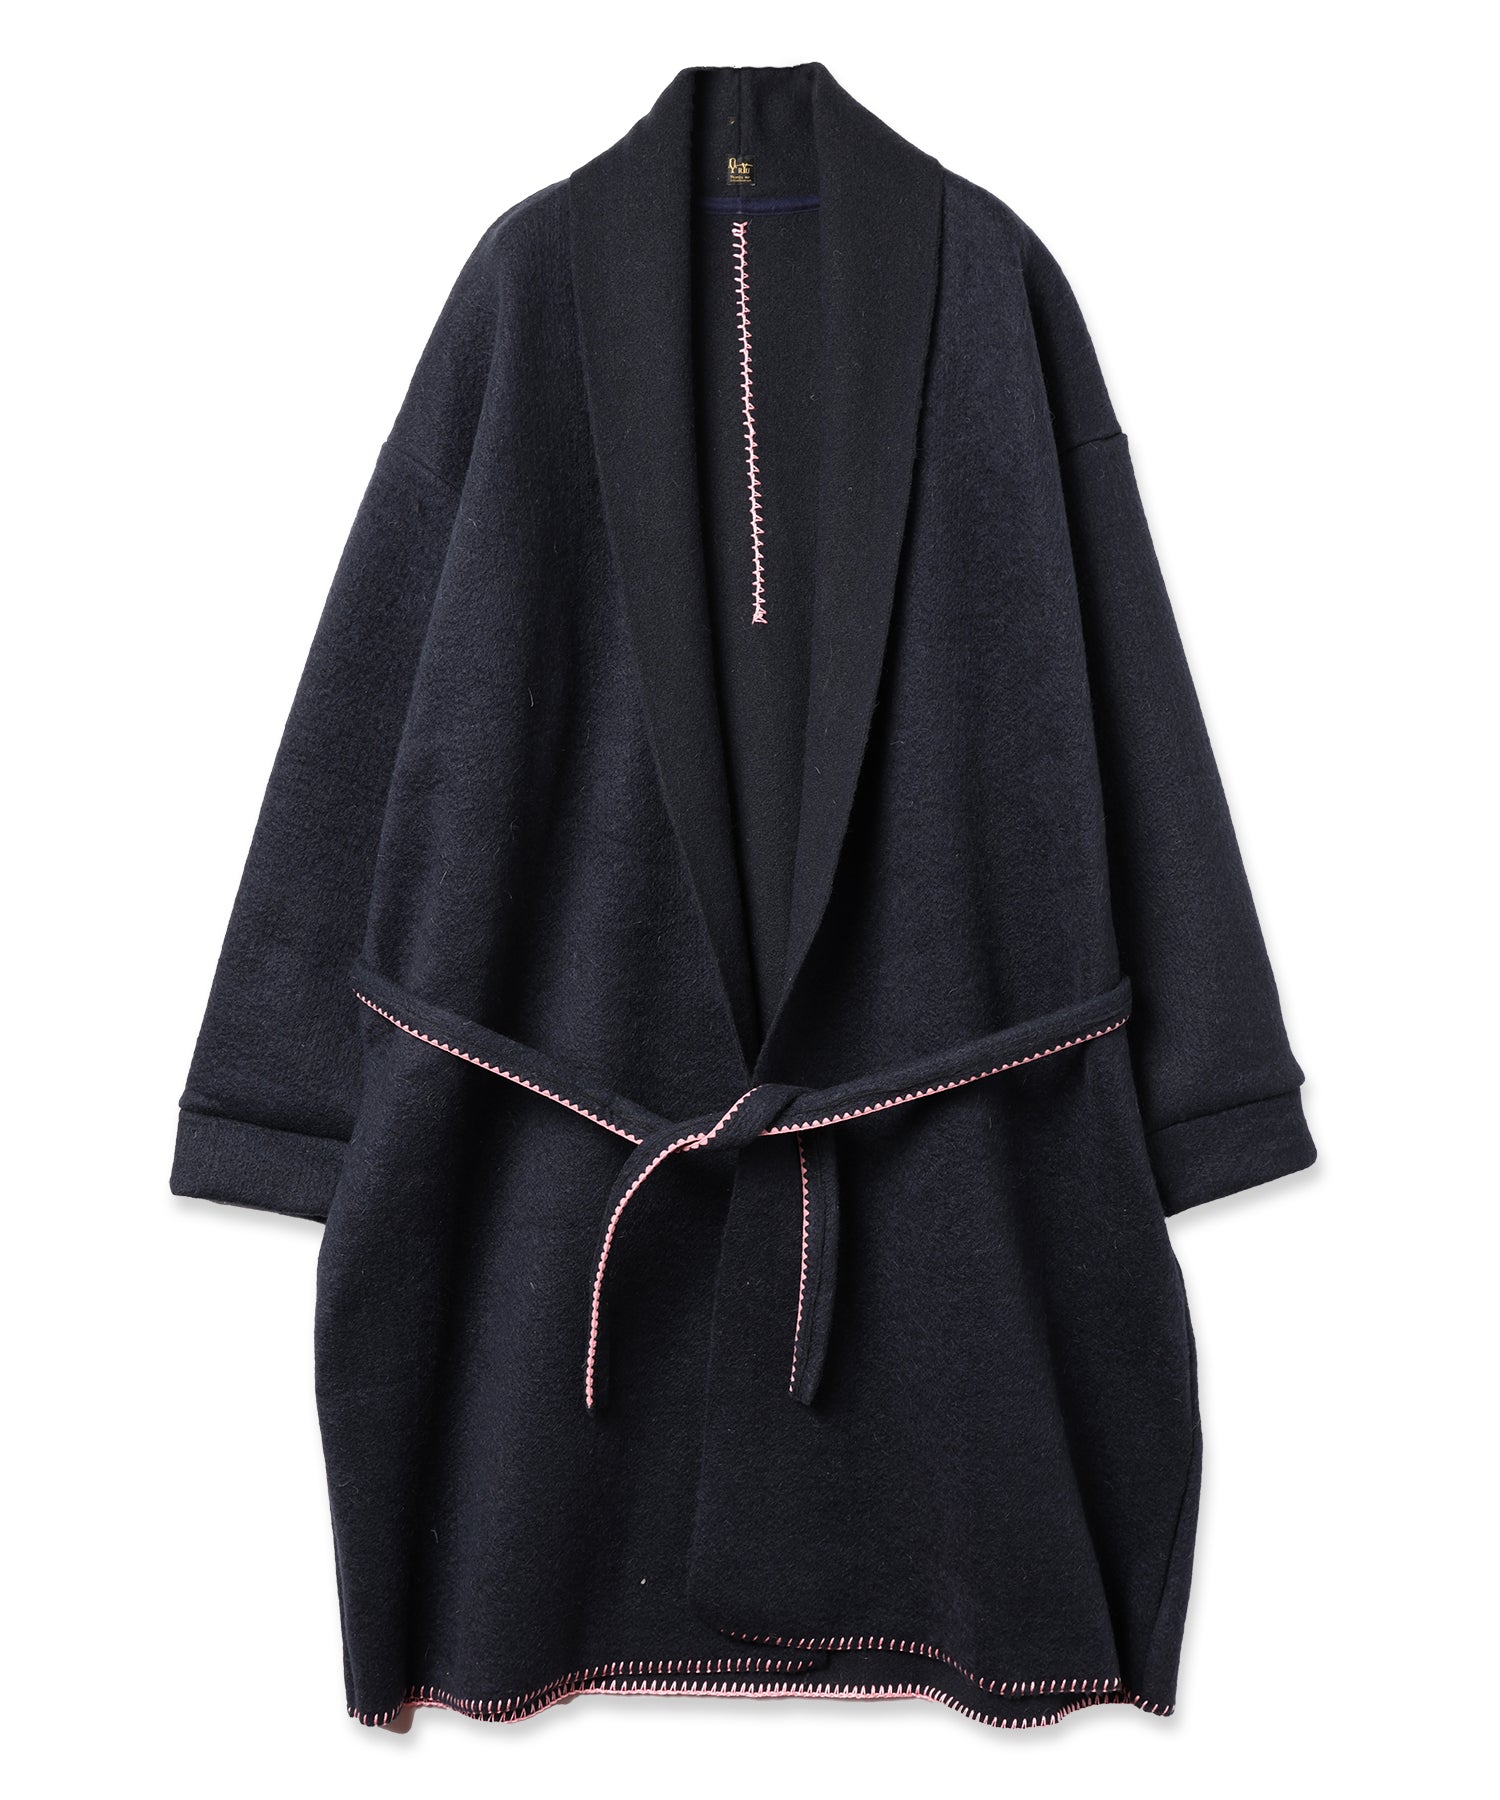 needle work gown coat – ANLIO（アンリオ）